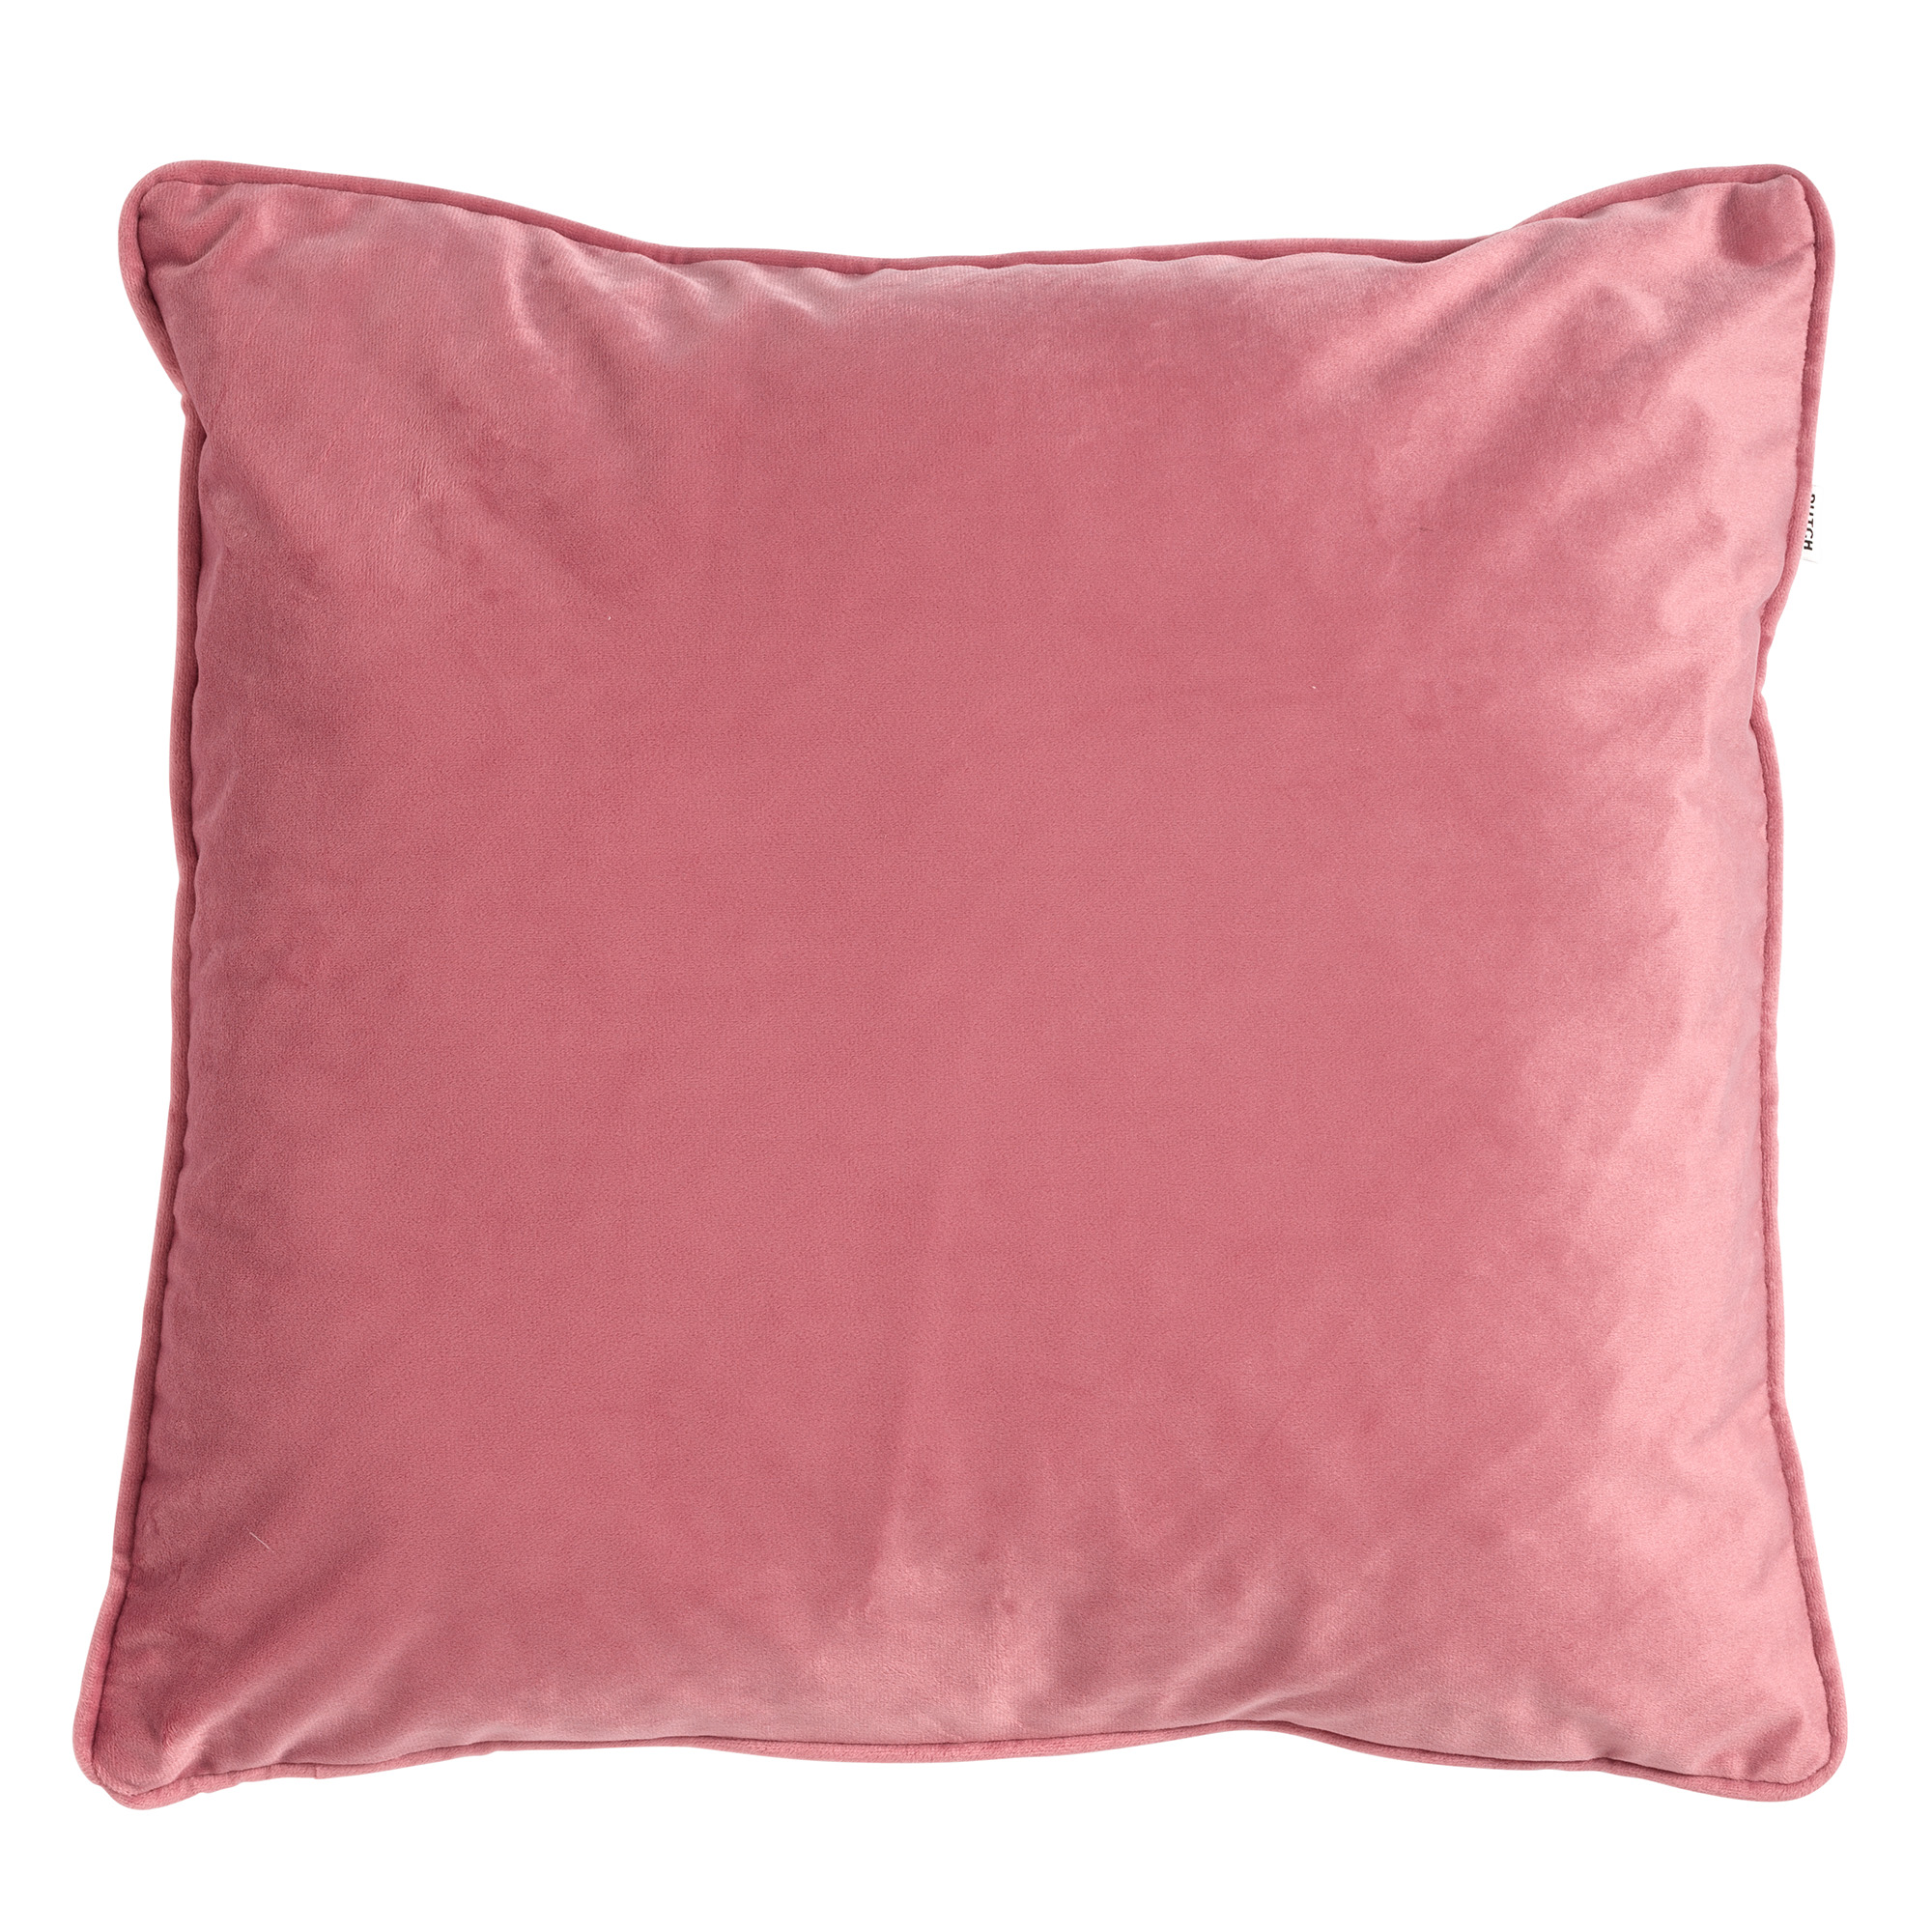 FINN - Kussenhoes velvet 60x60 cm -  Dusty Rose - roze